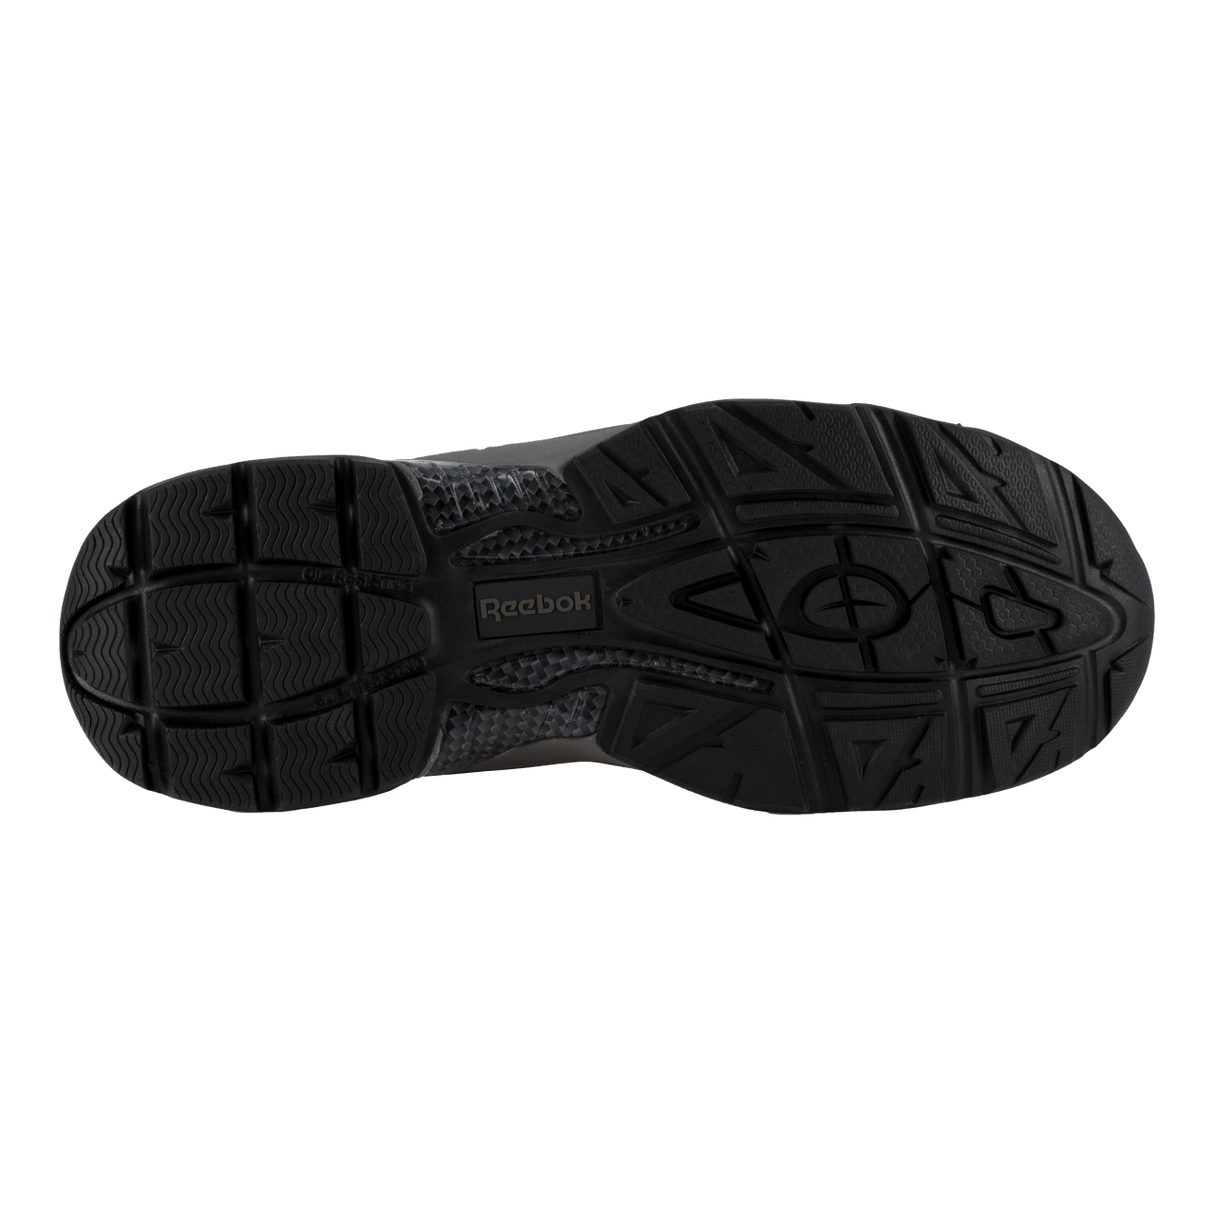 Beamer Athletic Composite Toe Black Waterproof